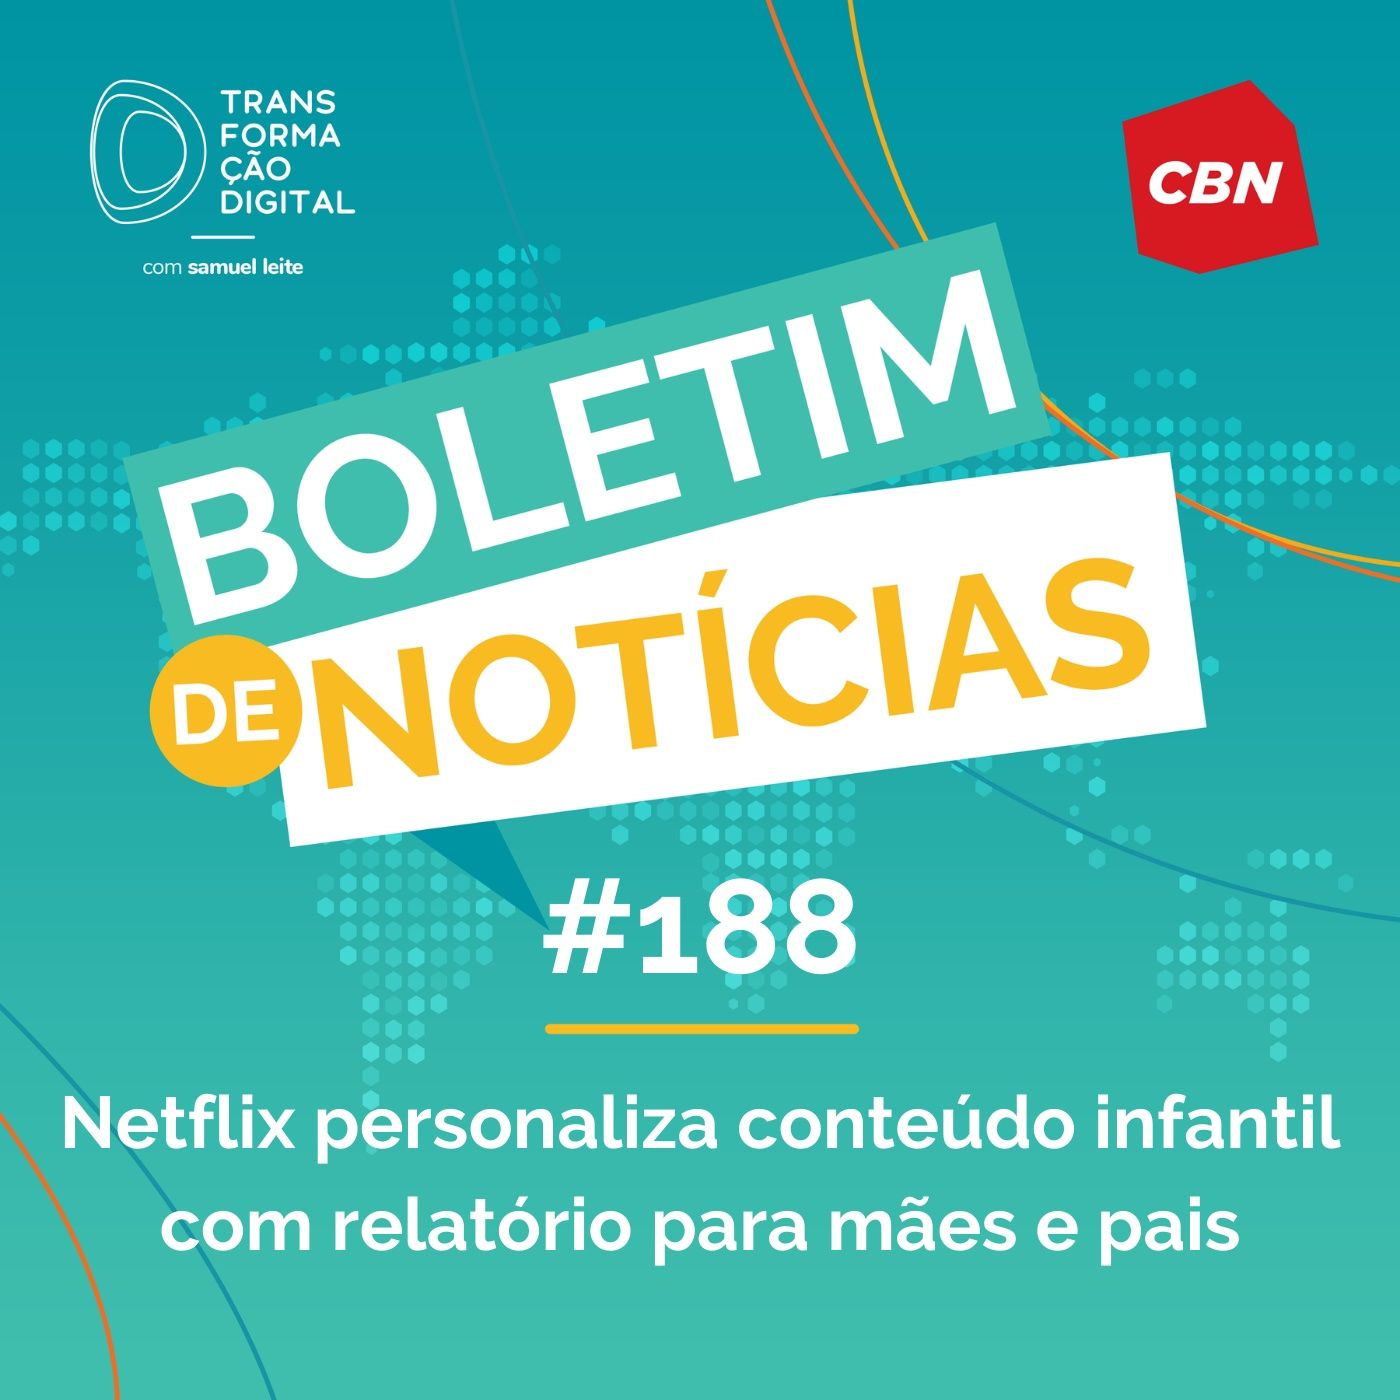 Transformação Digital CBN - Boletim de Notícias #188 - Netflix personaliza conteúdo infantil com relatório para mães e pais